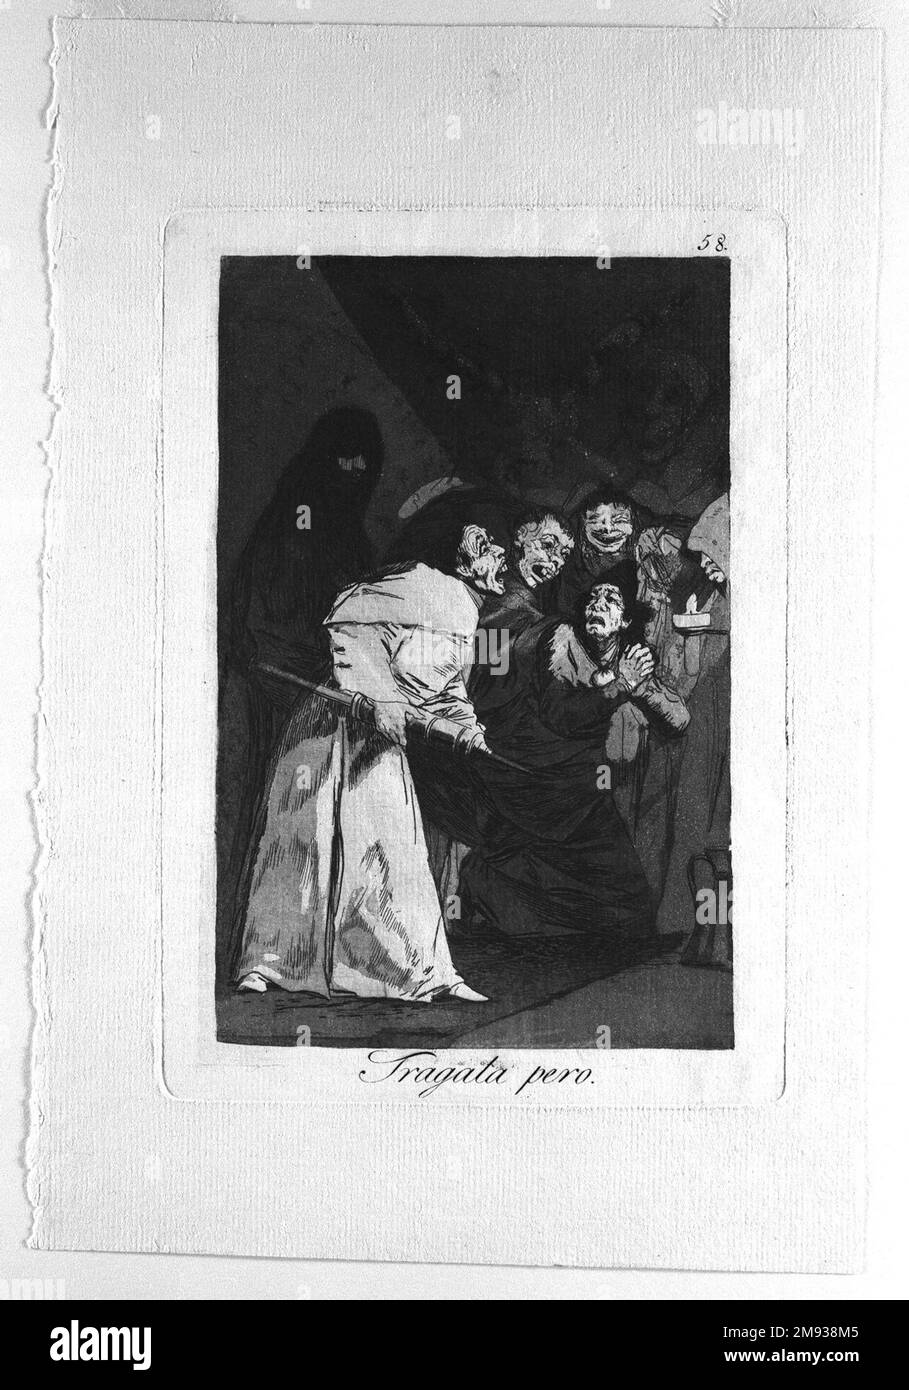 Swallow IT, Dog (Tragala perro) Francisco de Goya y Lucientes (Spanisch, 1746-1828). , 1797-1798. Ätzen und Aquatint auf Laienpapier, Blatt: 11 7/8 x 7 15/16 cm (30,2 x 20,2 cm). Europäische Art. 1797-1798 Stockfoto